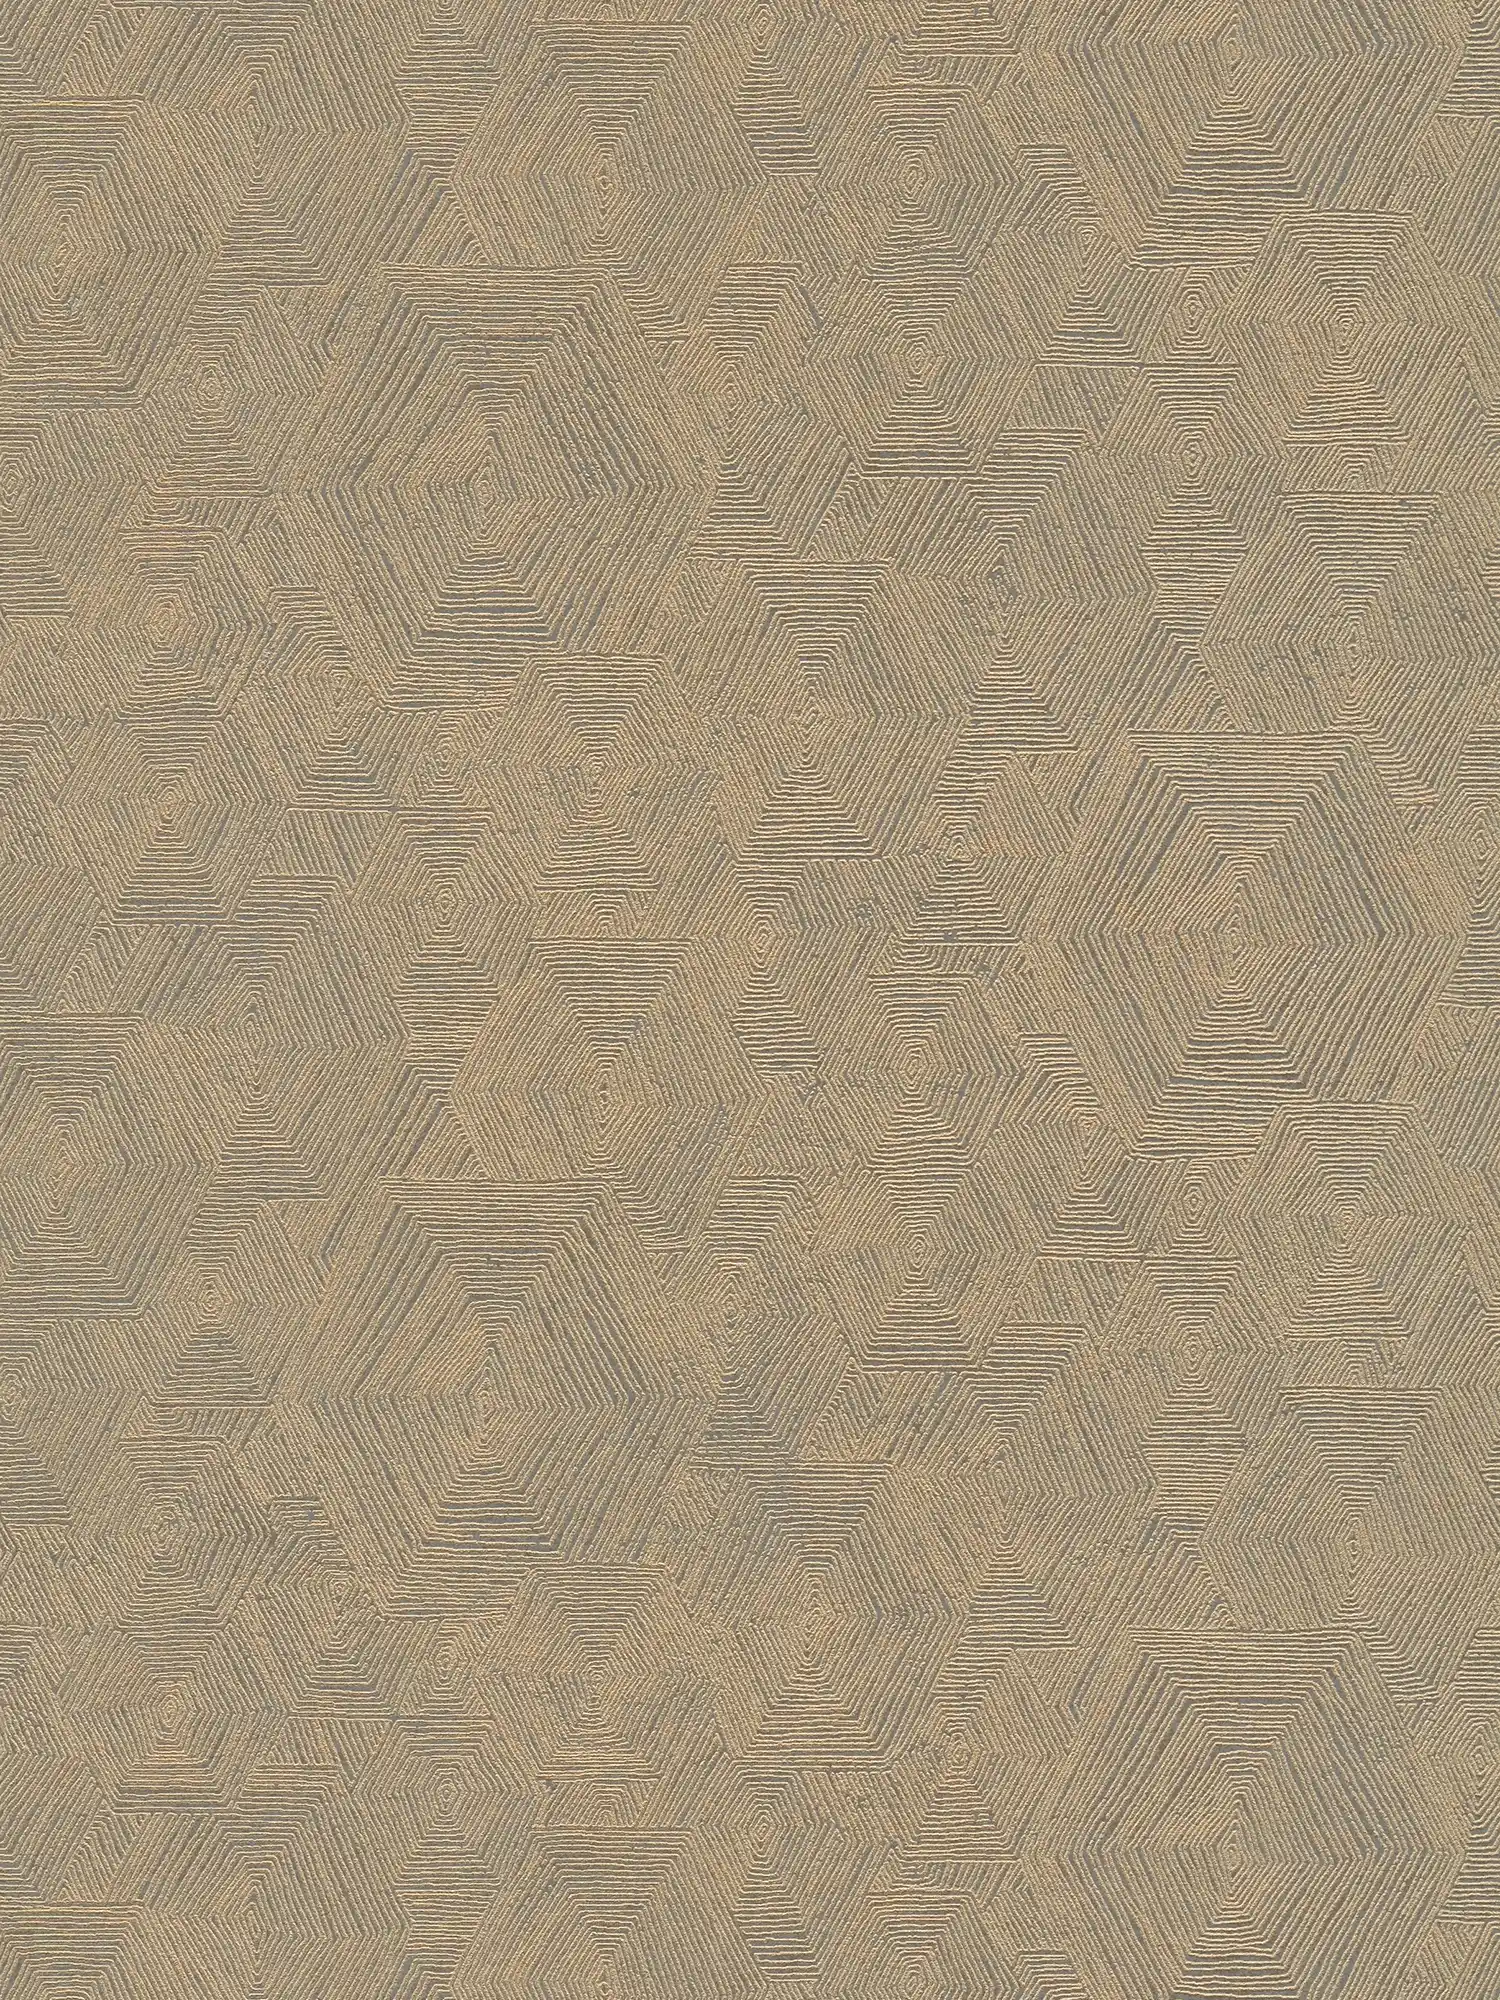 Papier peint chiné avec structure graphique dans un look ethnique - marron, métallique
